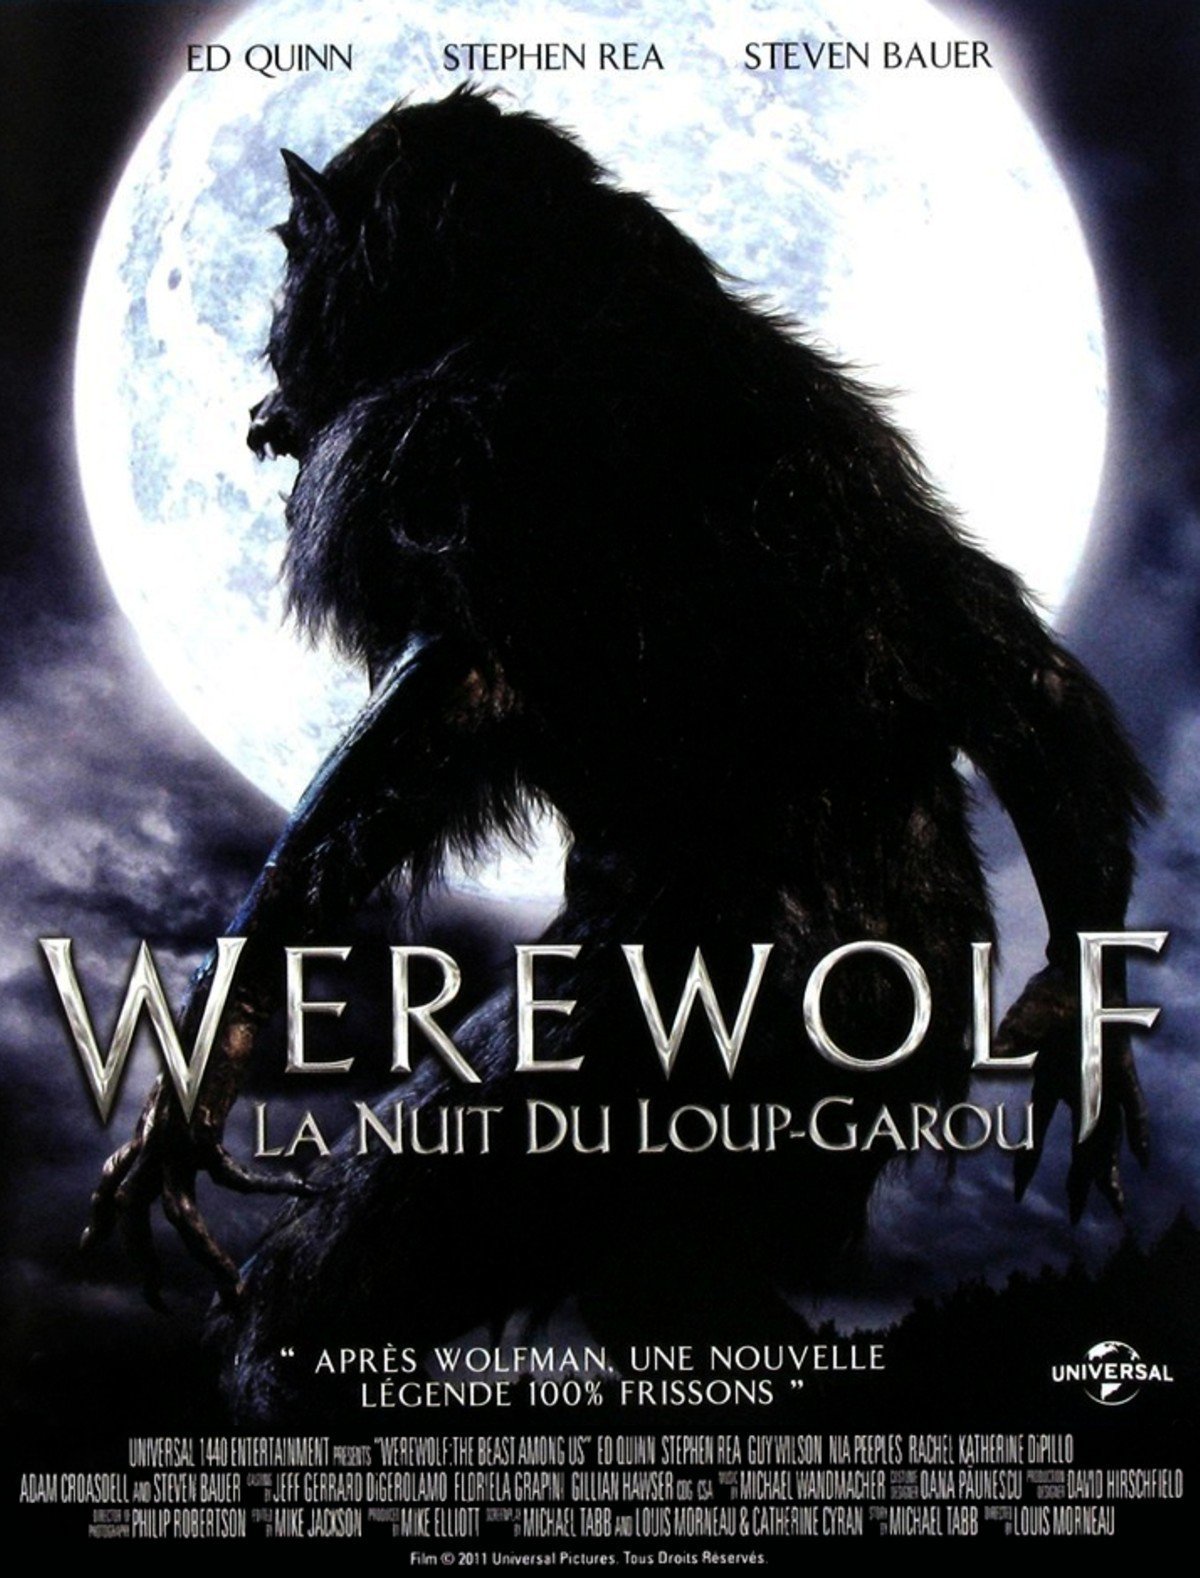 Werewolf - La nuit du loup-garou